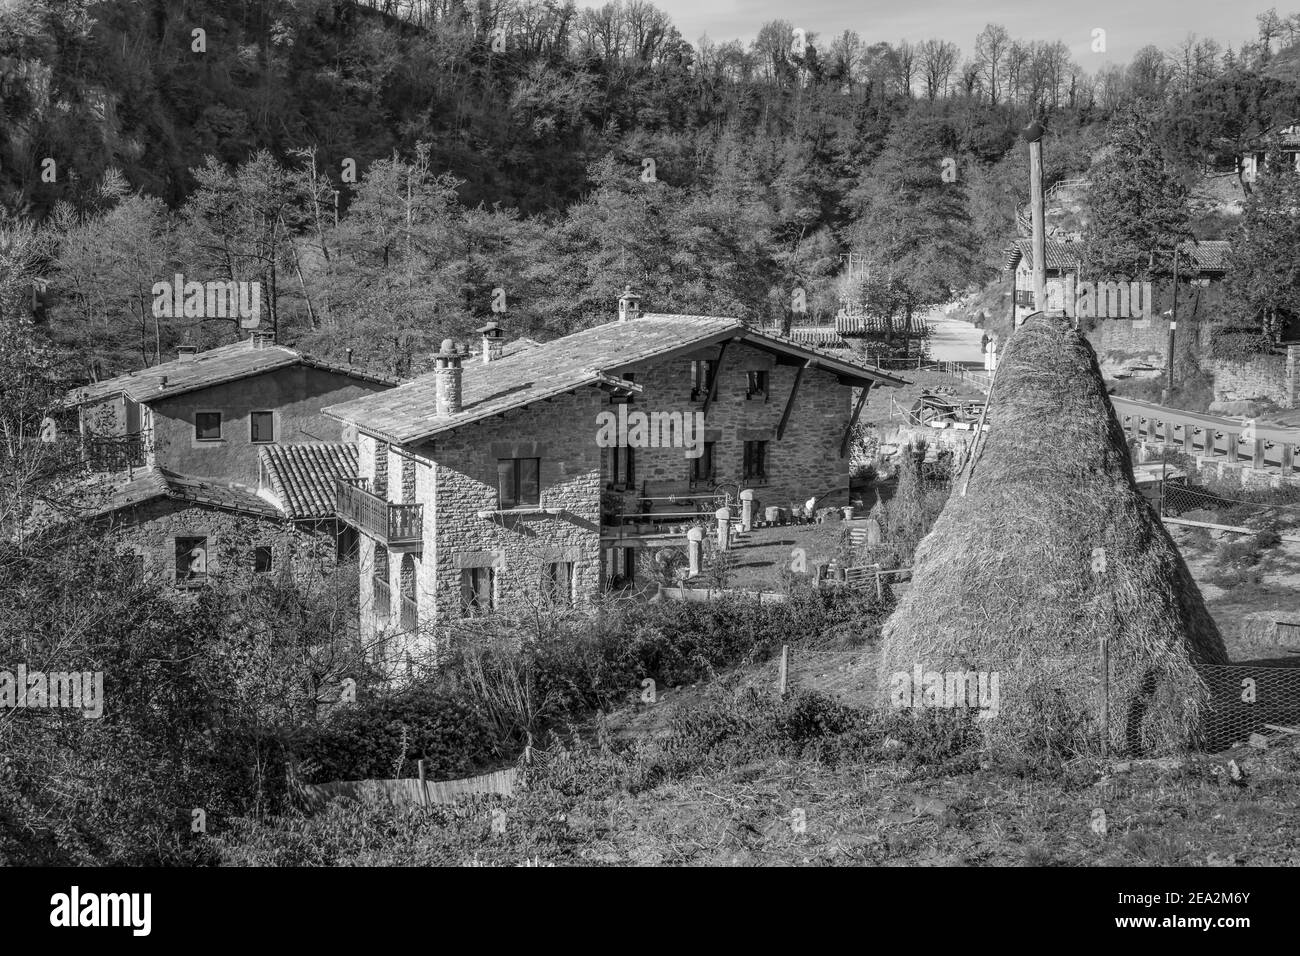 Haystack tradizionale sul campo a Rupit i Pruit, antico borgo medievale catalano a Barcellona, Spagna. Bianco e nero stile fotografico vintage. Foto Stock